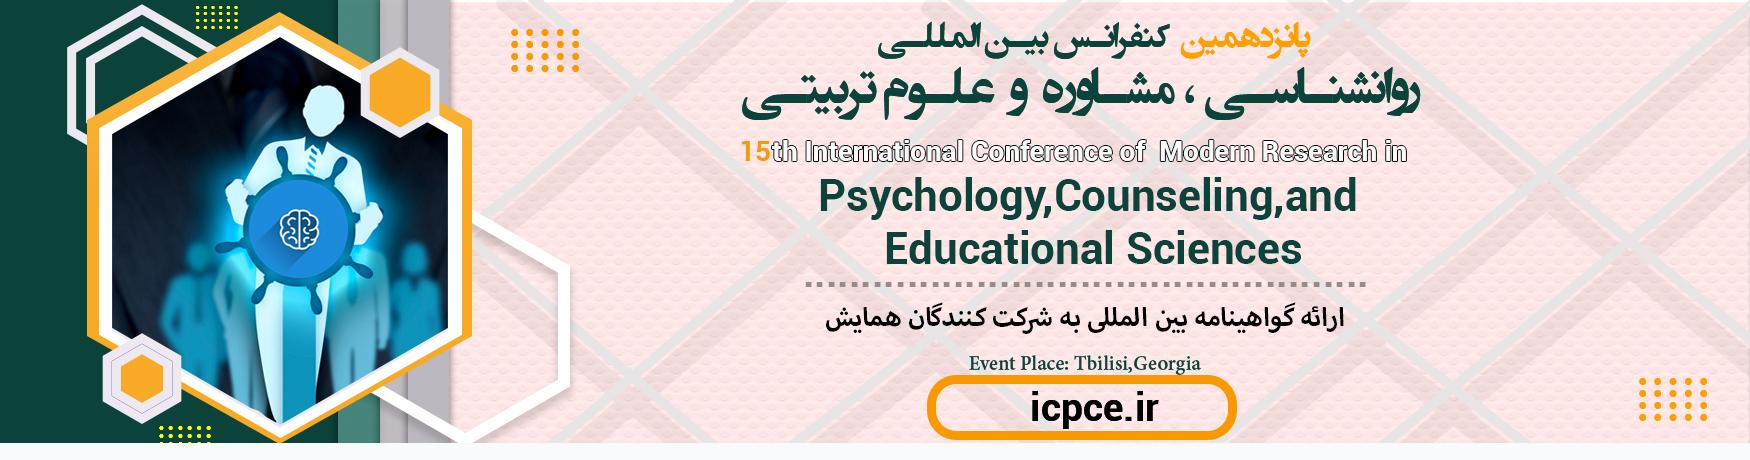 کنفرانس بین المللی روانشناسی ، مشاوره و علوم تربیتی	